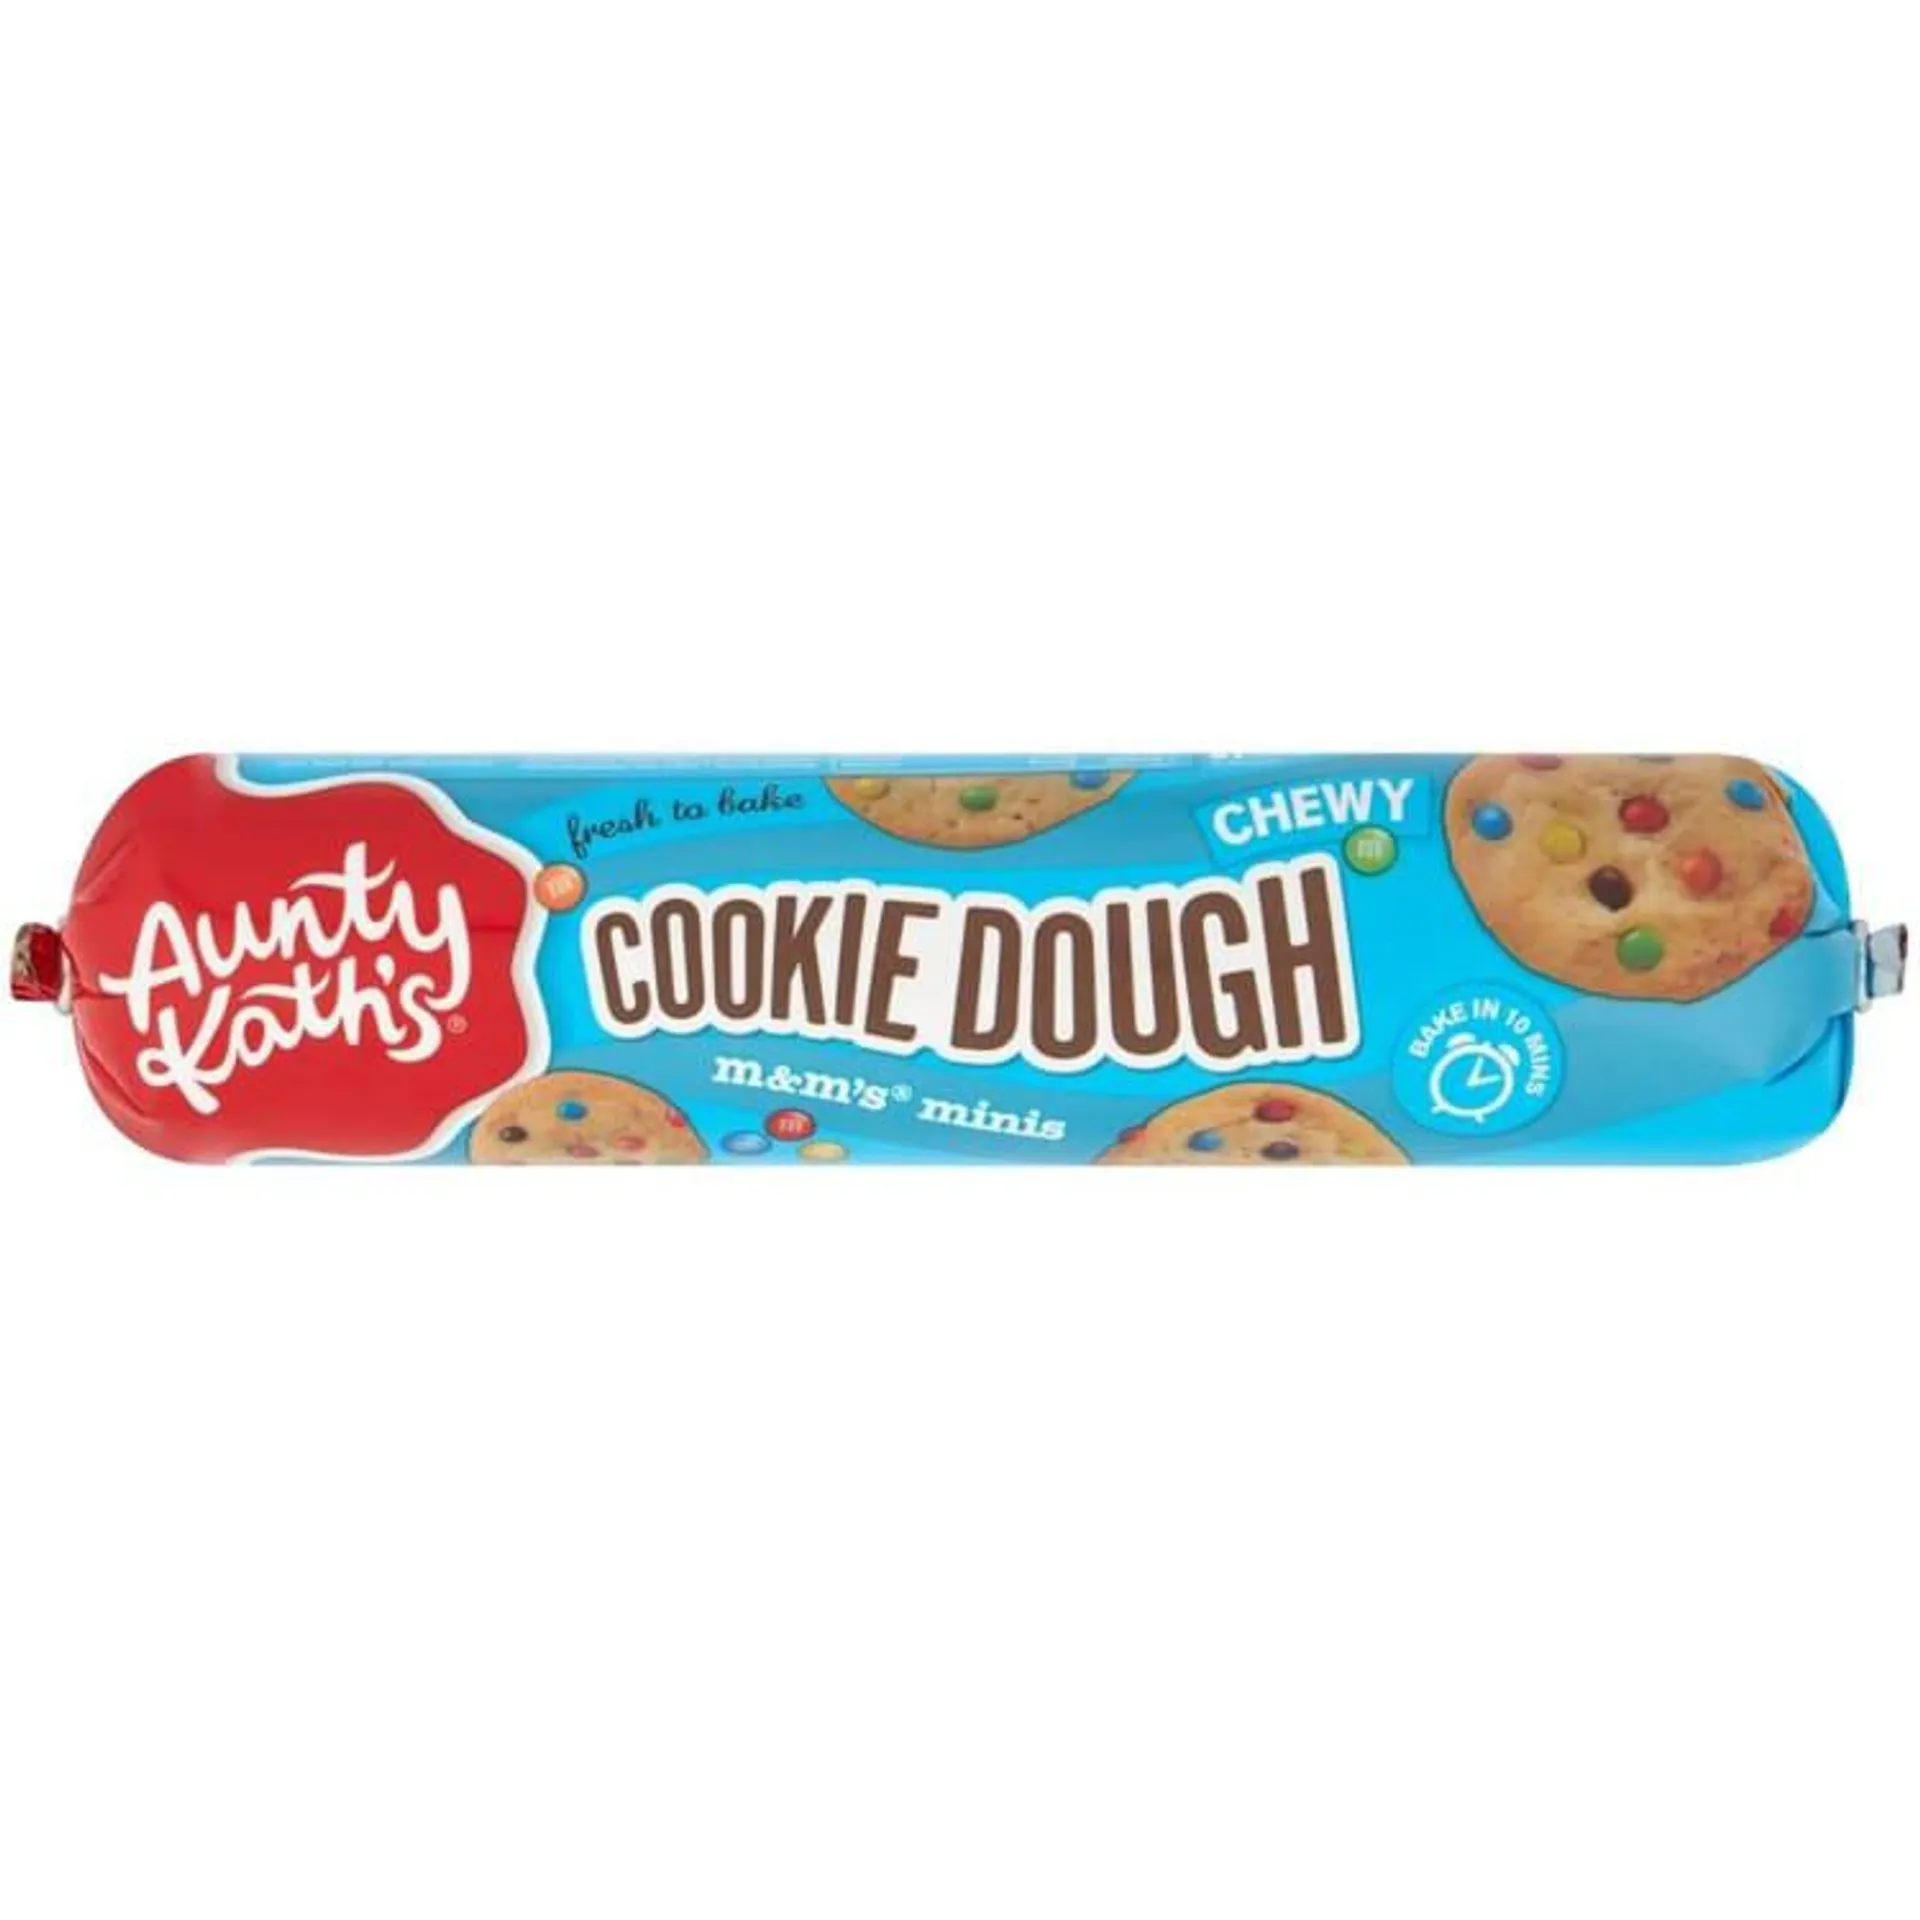 Aunty Kath's Cookie Dough M&Ms